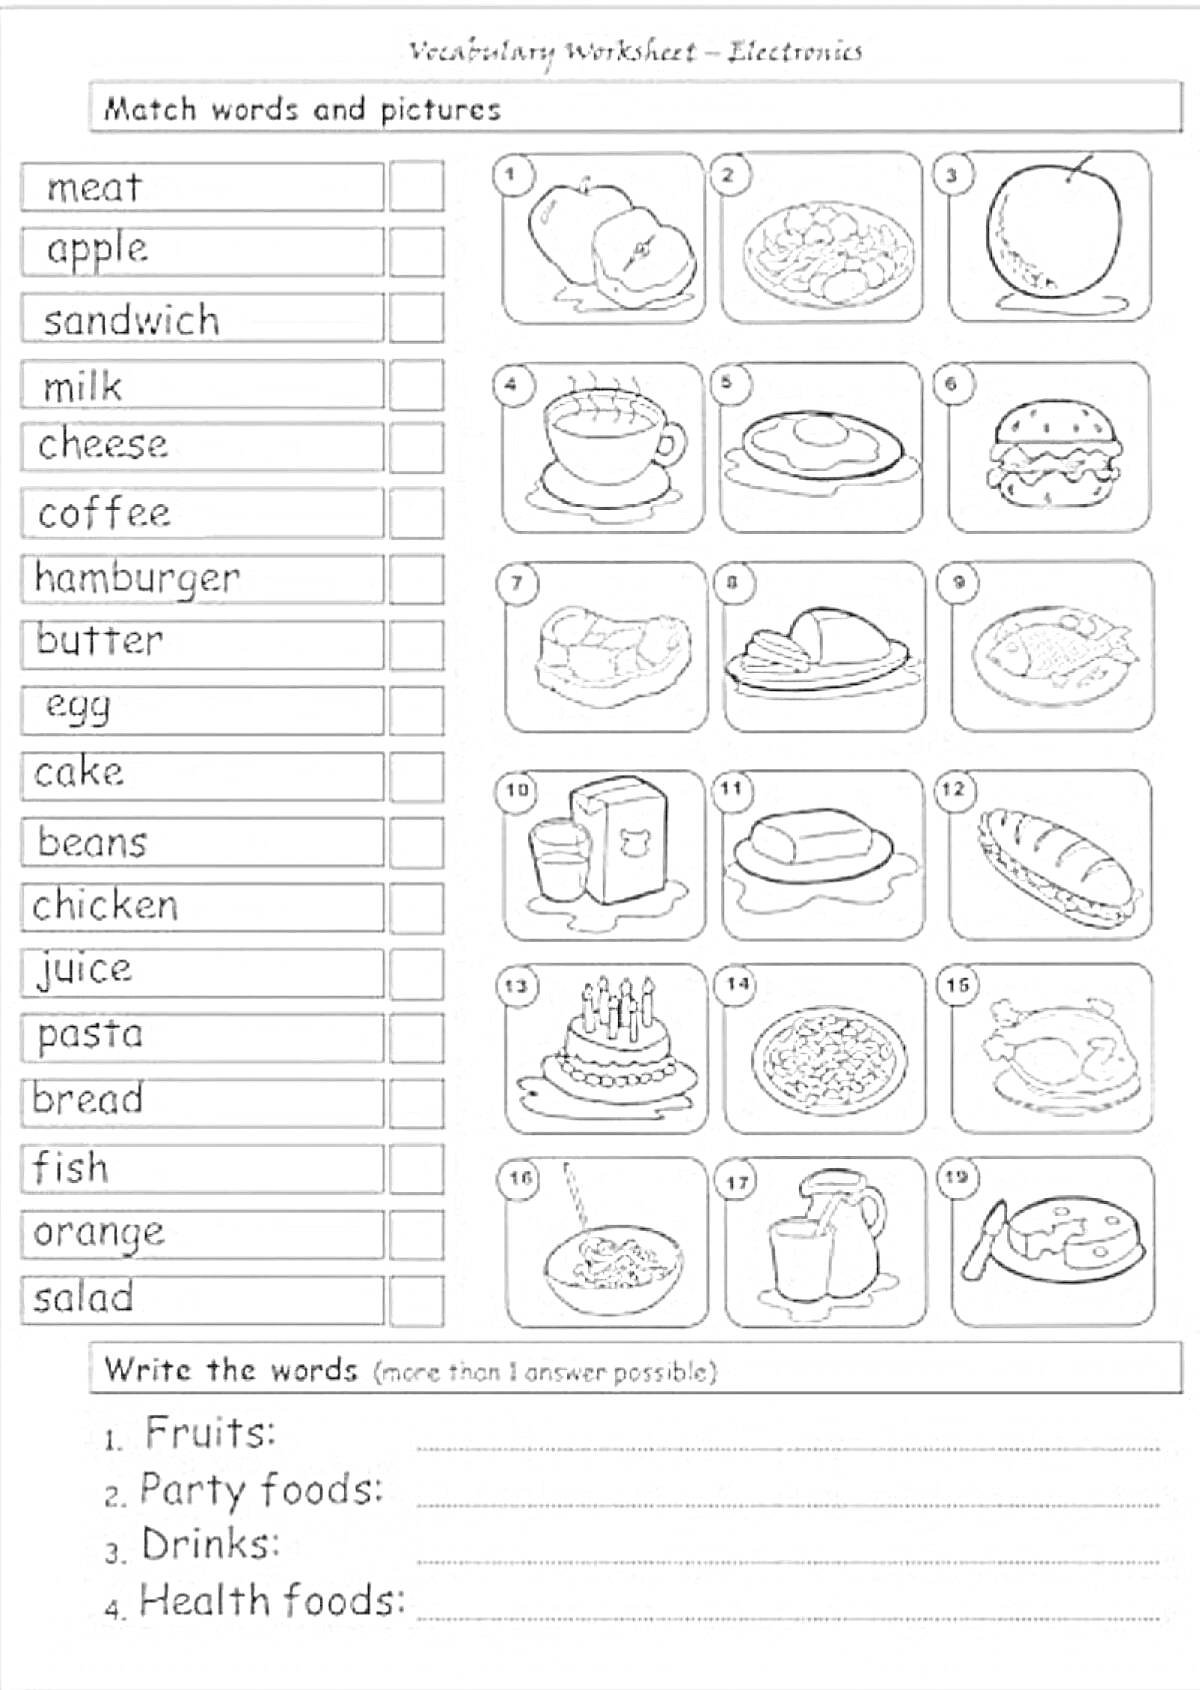 Раскраска Раскраска на тему еды на английском языке с изображением продуктов: мясо, яблоко, сэндвич, молоко, сыр, кофе, гамбургер, масло, яйцо, торт, фасоль, курица, сок, паста, хлеб, рыба, апельсин, салат